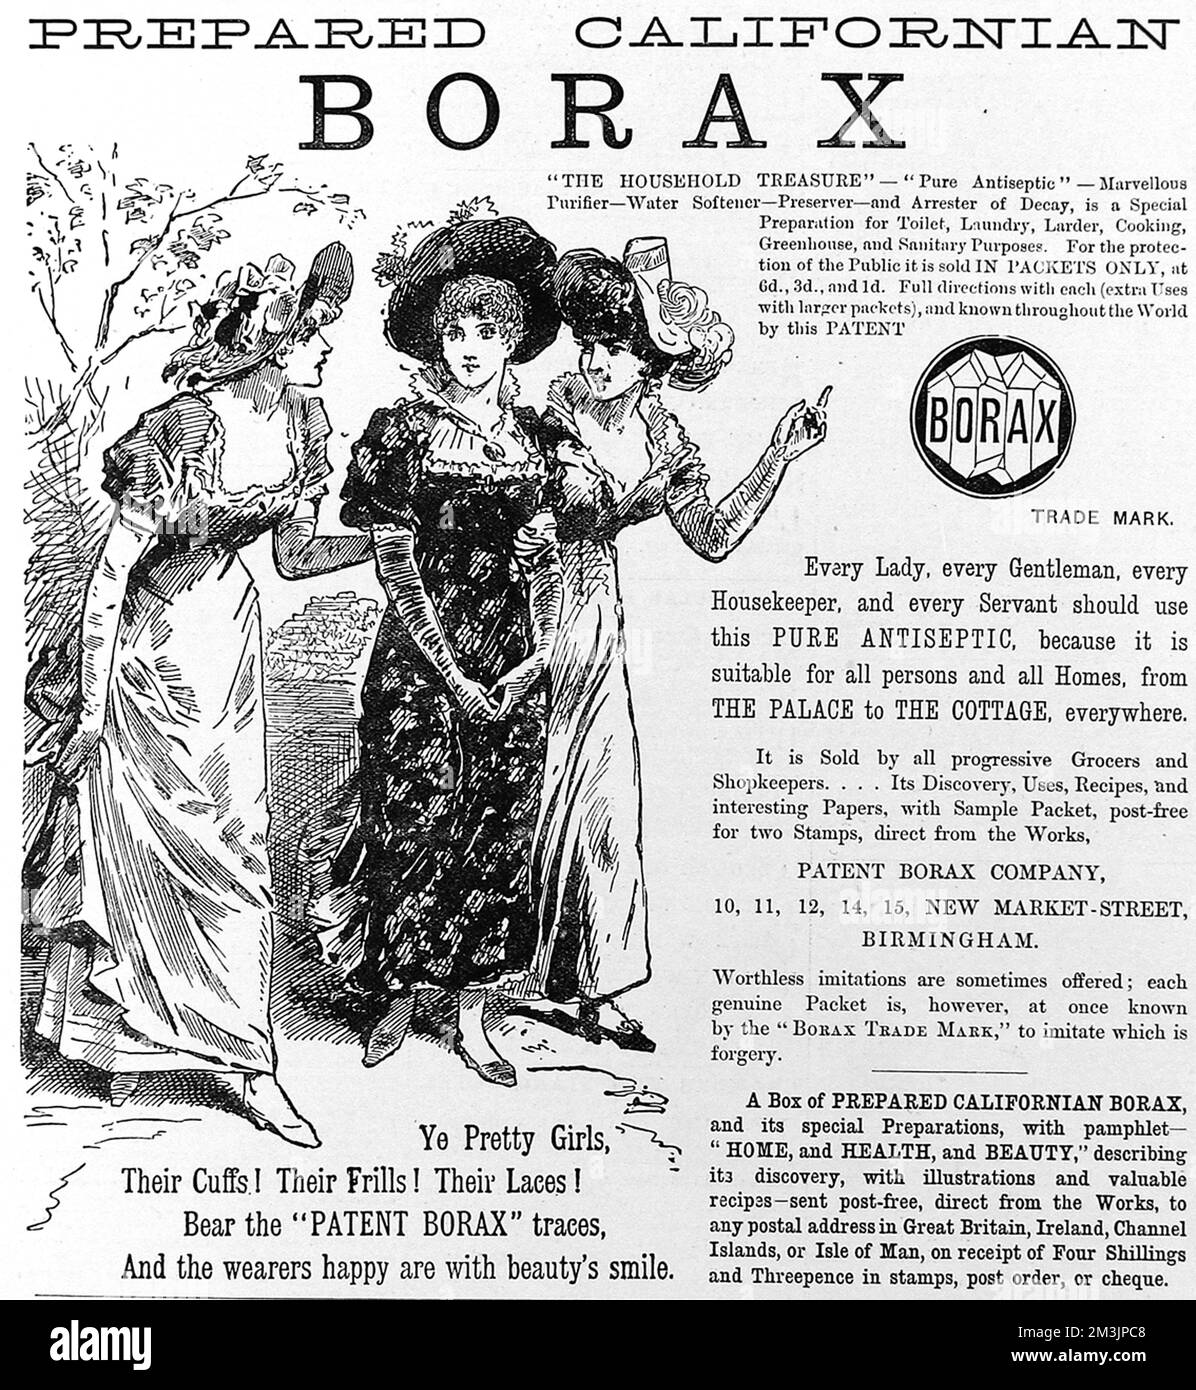 Ein romantisch gestalteter Werbespot für Borax-Antiseptikum aus dem Jahr 1885. Borax wurde für eine Vielzahl von Haushaltsarbeiten verwendet und ist als antibakterielles Reinigungs-, Fungizid- und Bleichmittel wirksam. 1885 Stockfoto